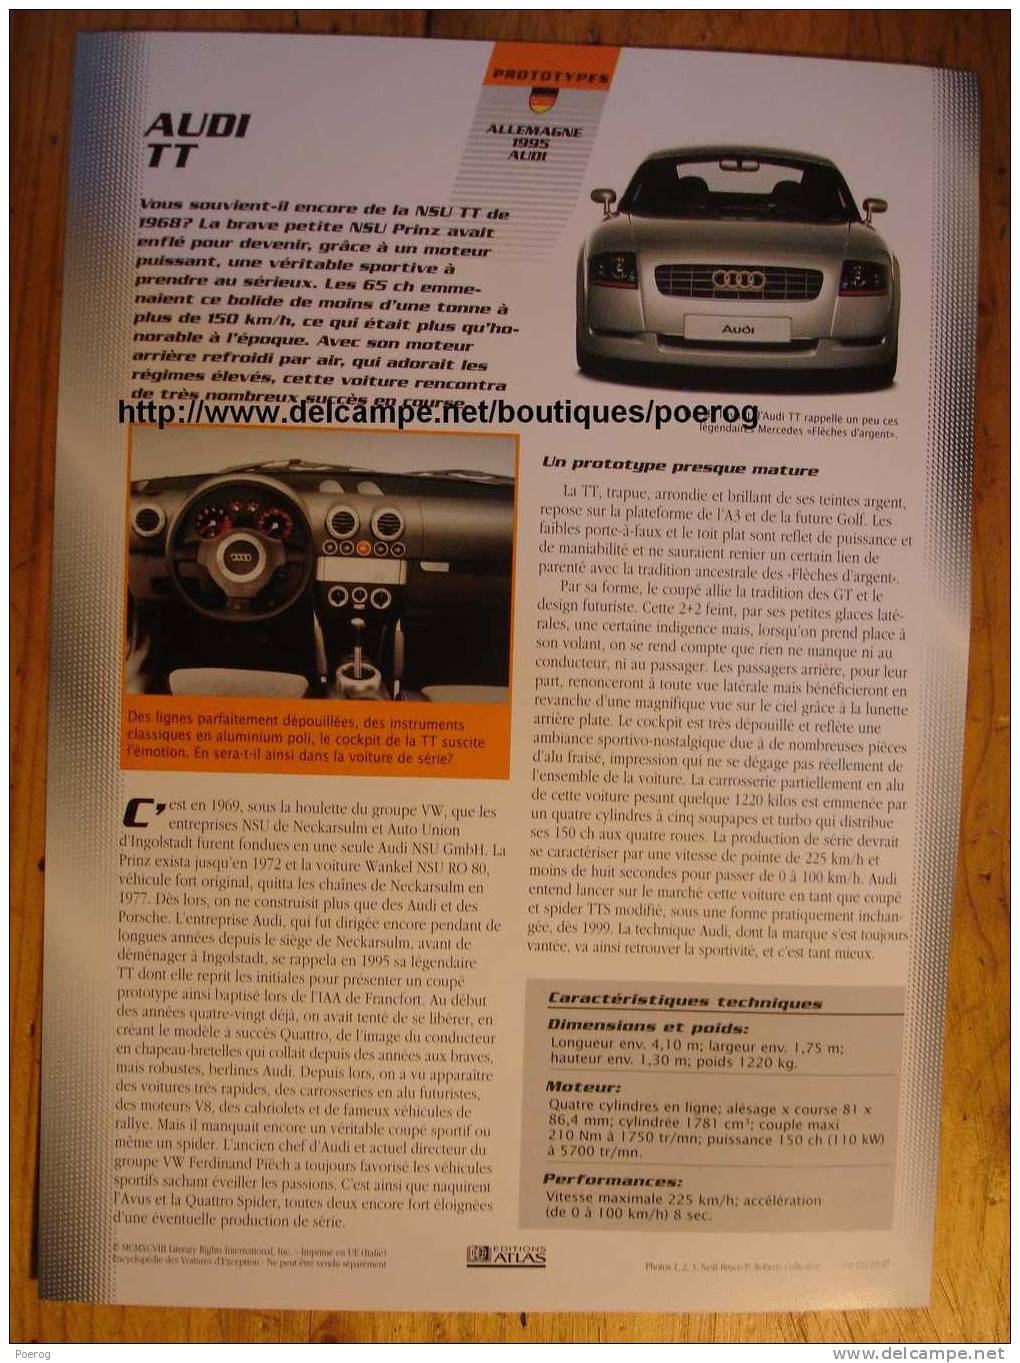 AUDI TT - FICHE VOITURE GRAND FORMAT (A4) - 1998 - Auto Automobile Automobiles Voitures Car Cars - Automobili